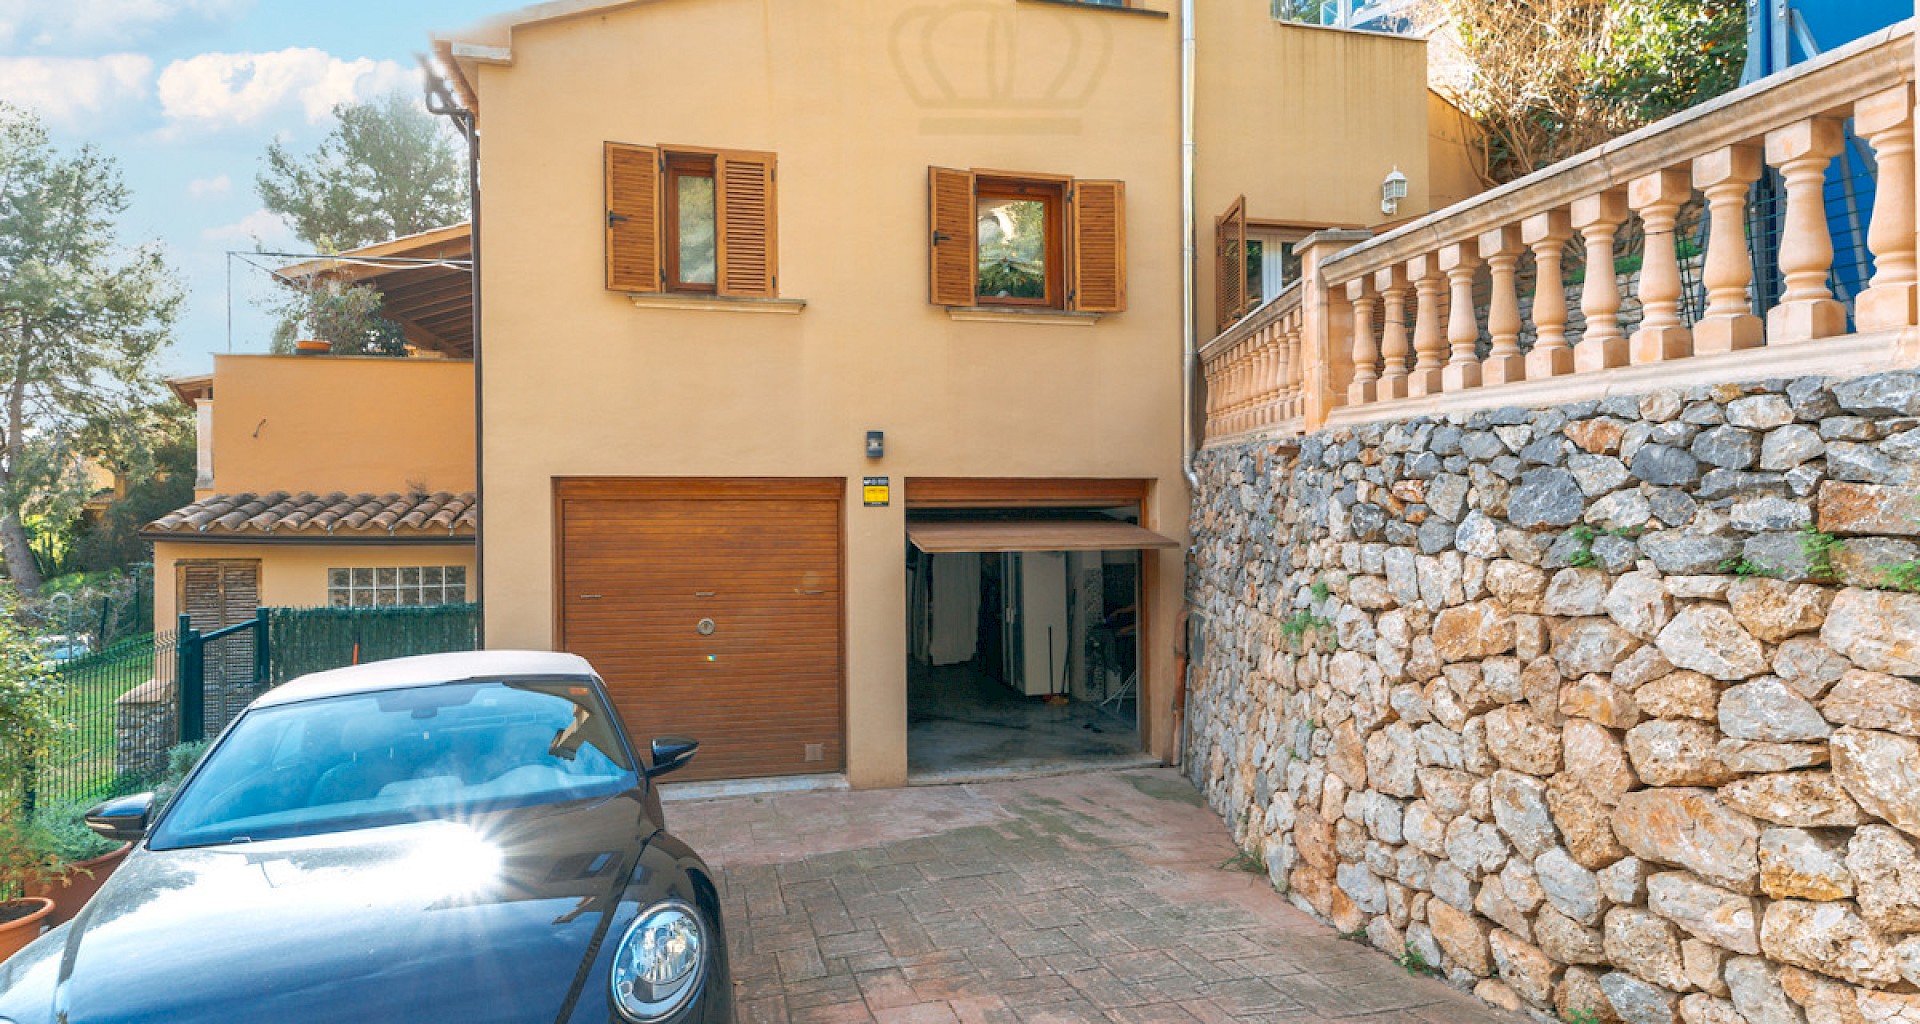 KROHN & LUEDEMANN Casa mediterránea en Génova con piscina comunitaria en un complejo privado bien cuidado Mediterranes Haus in Genova mit Gemeinschaftspool 37